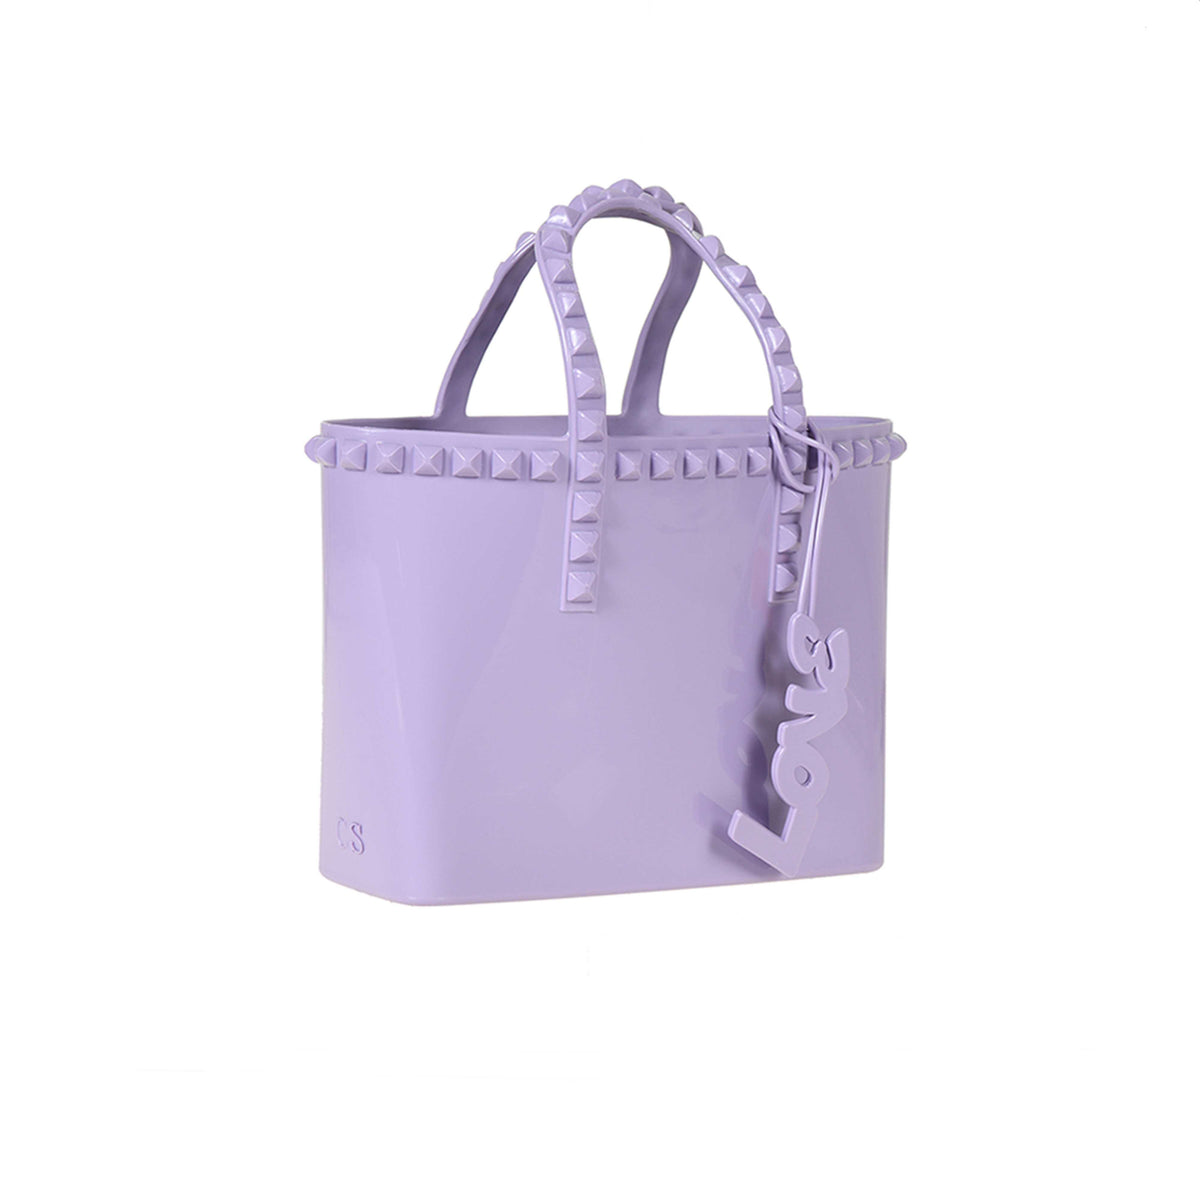 Micro mini jelly beach purse in color violet